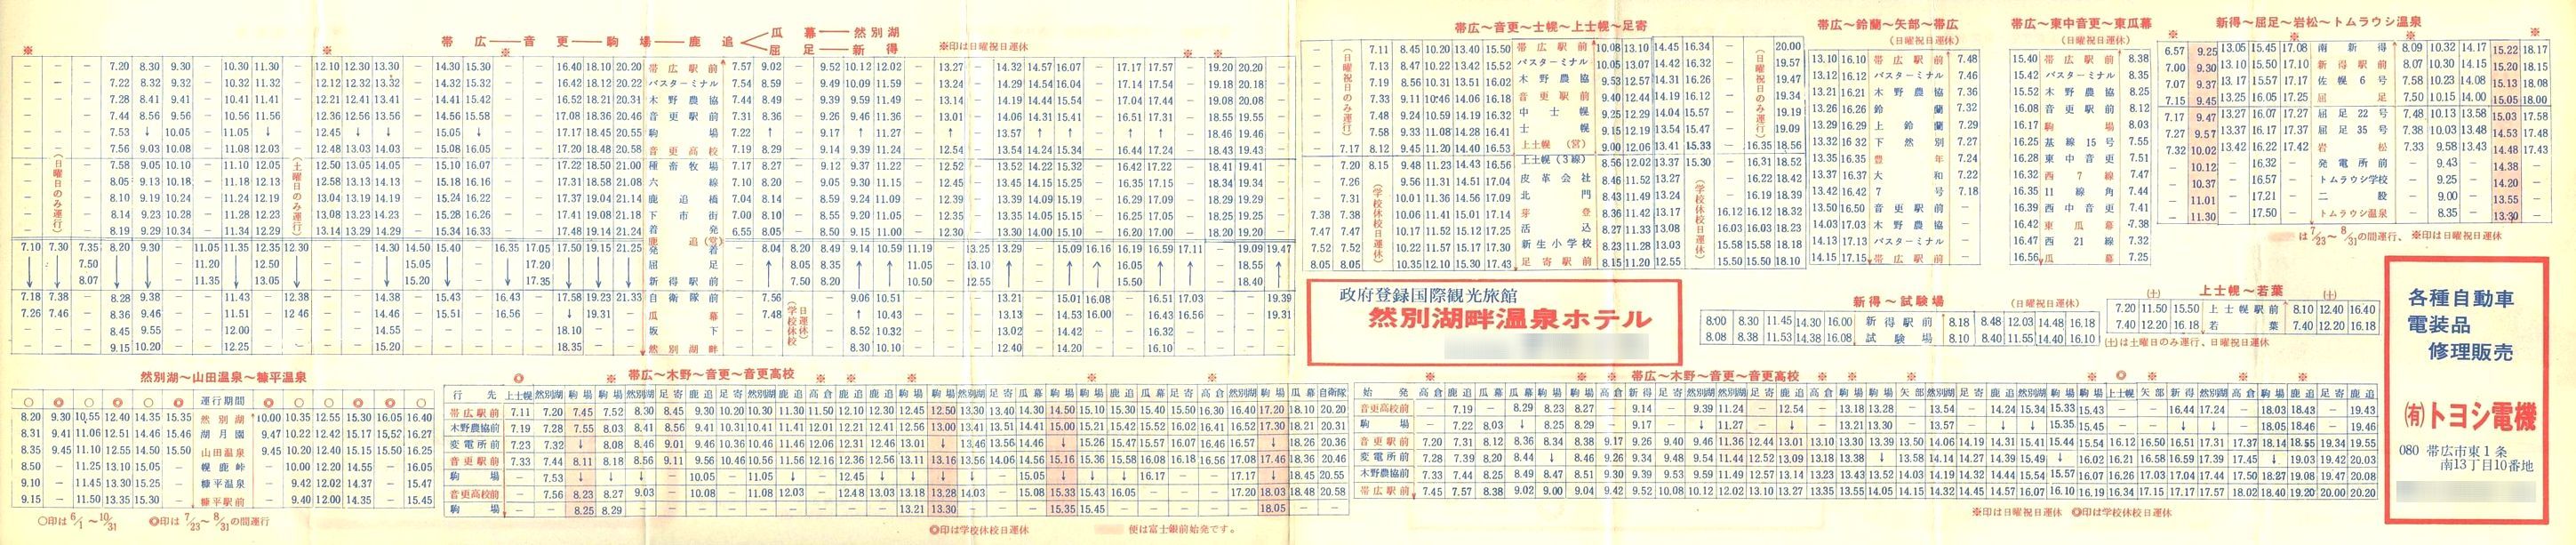 1978-04-29改正_北海道拓殖バス_時刻表裏面